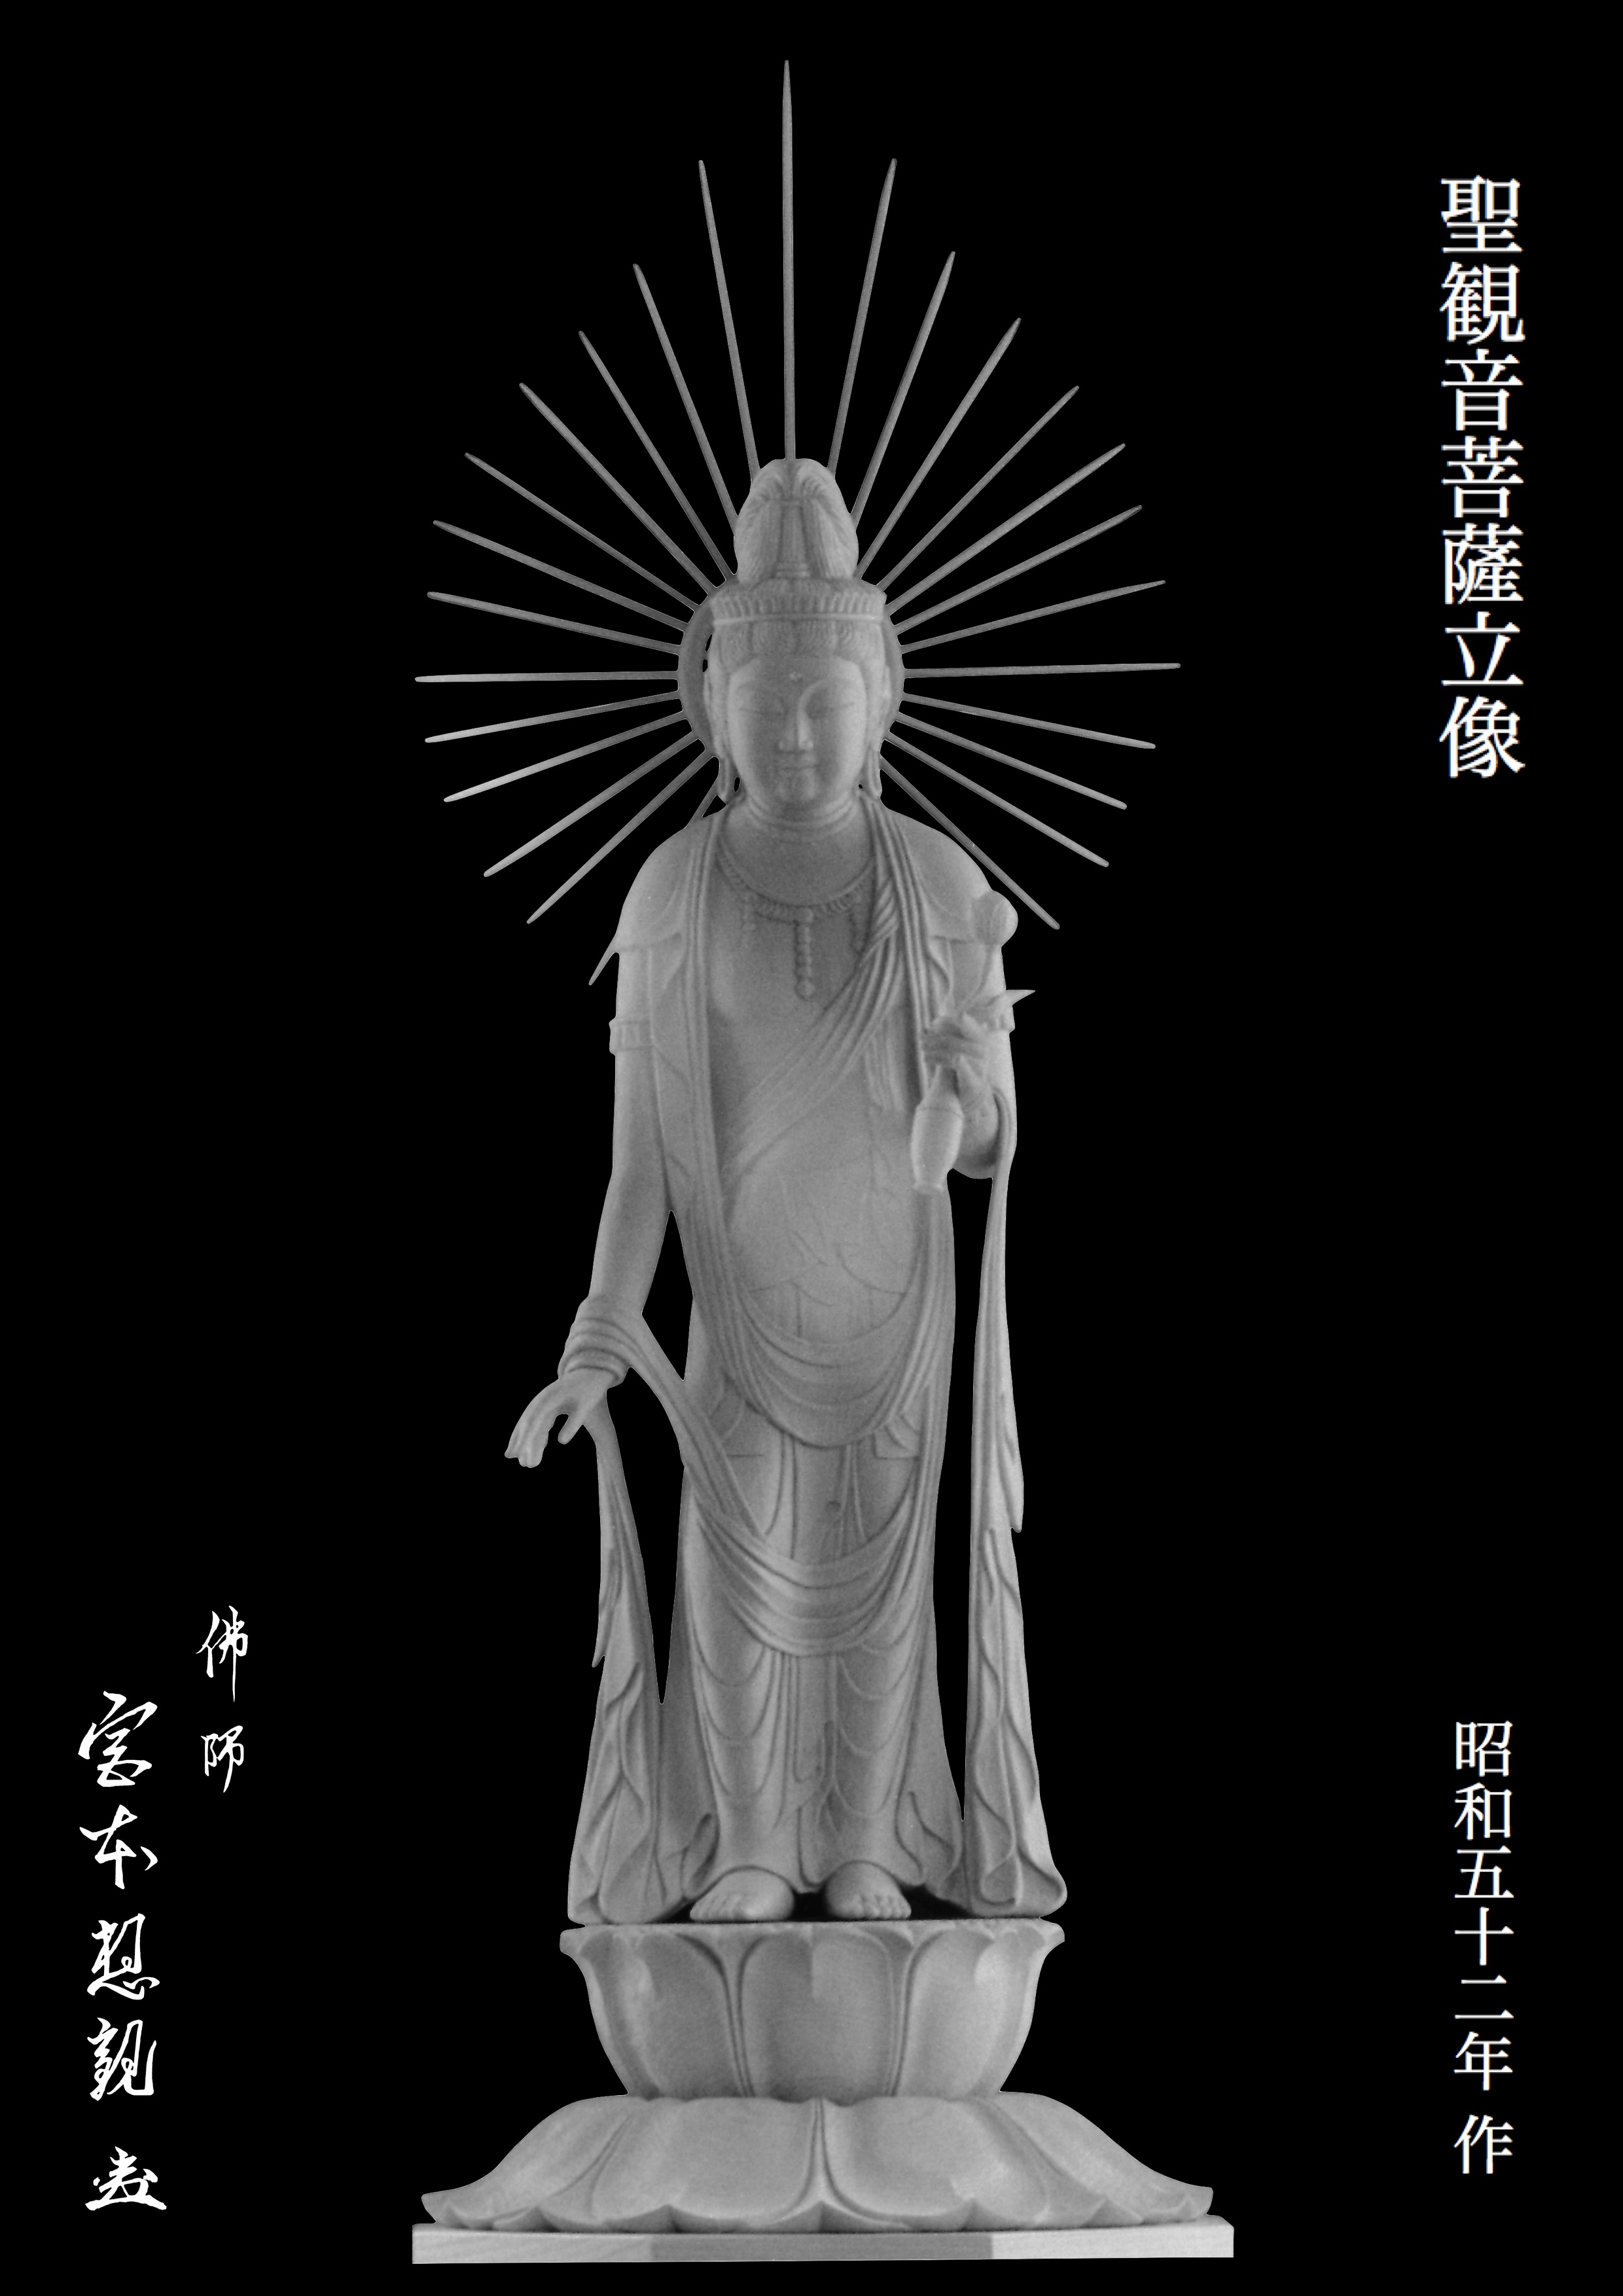 仏教美術 木彫金彩 浄瓶観音菩薩像 仏像 在銘 N 4753 - 美術品